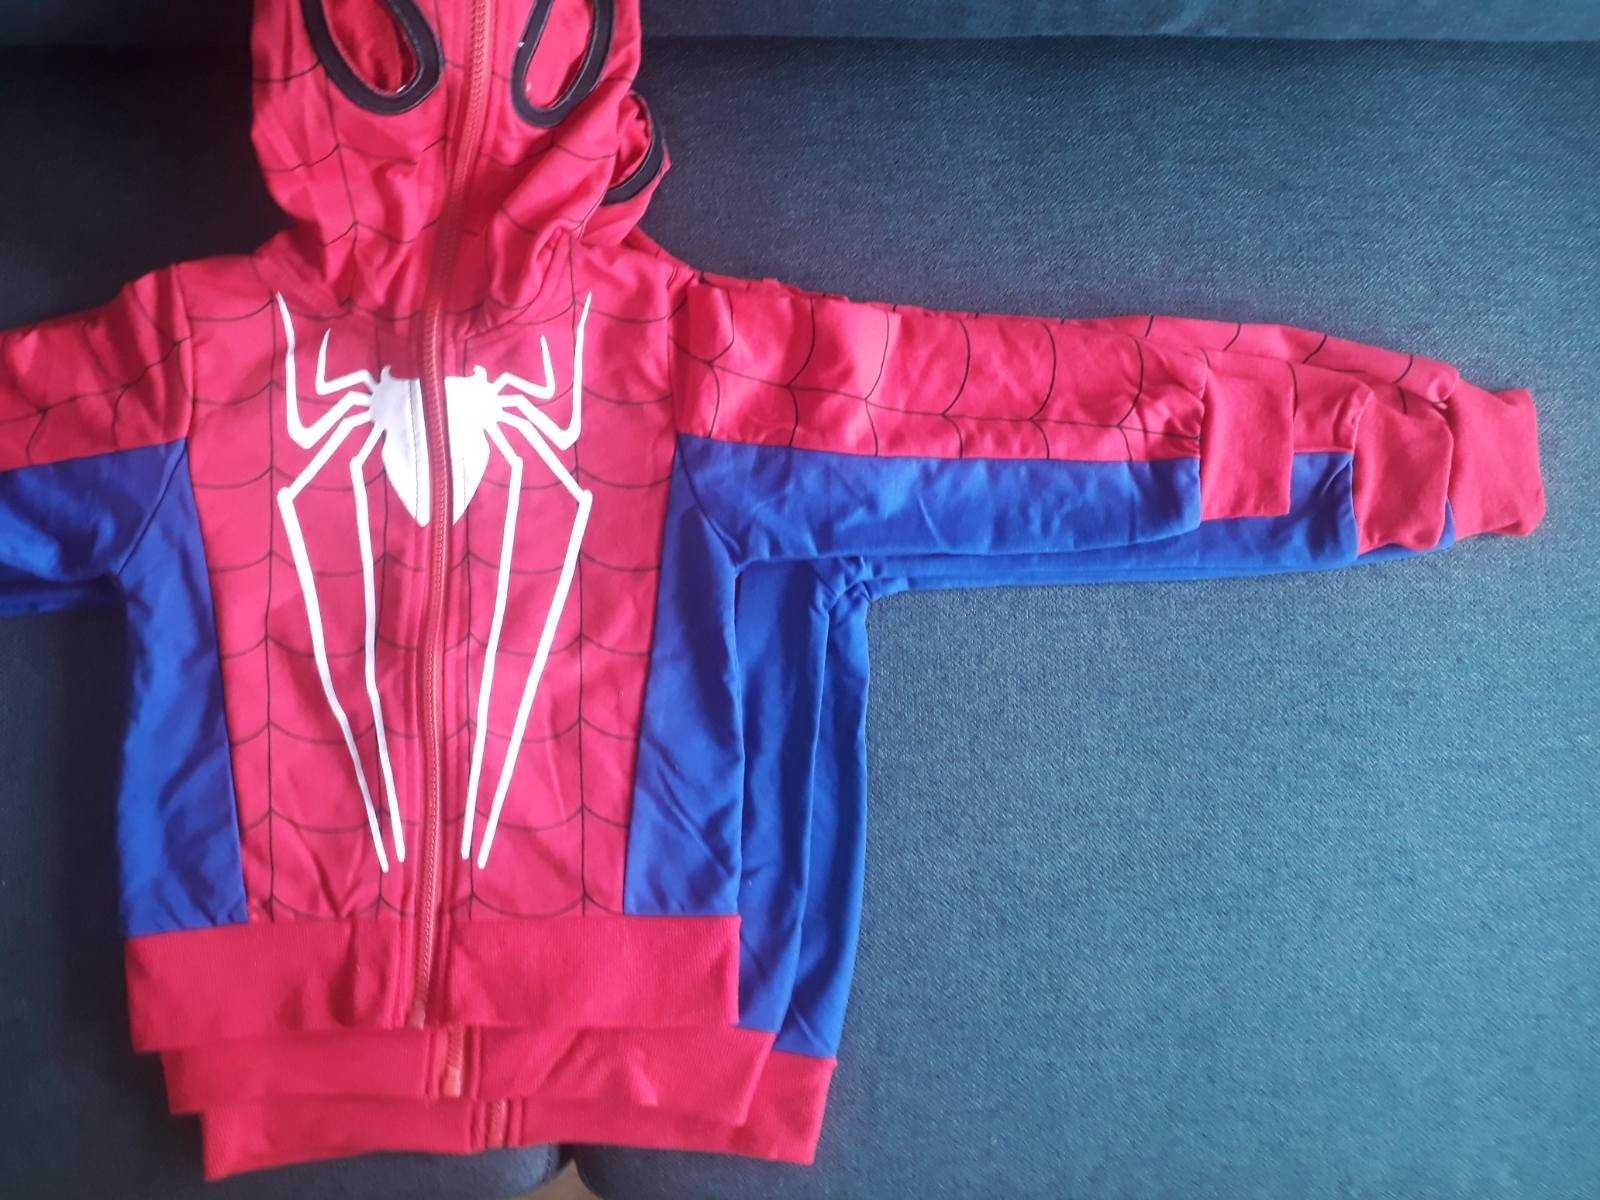 Комплект Спайдърмен Spiderman анцуг спортен екип Спайдермен 116/120